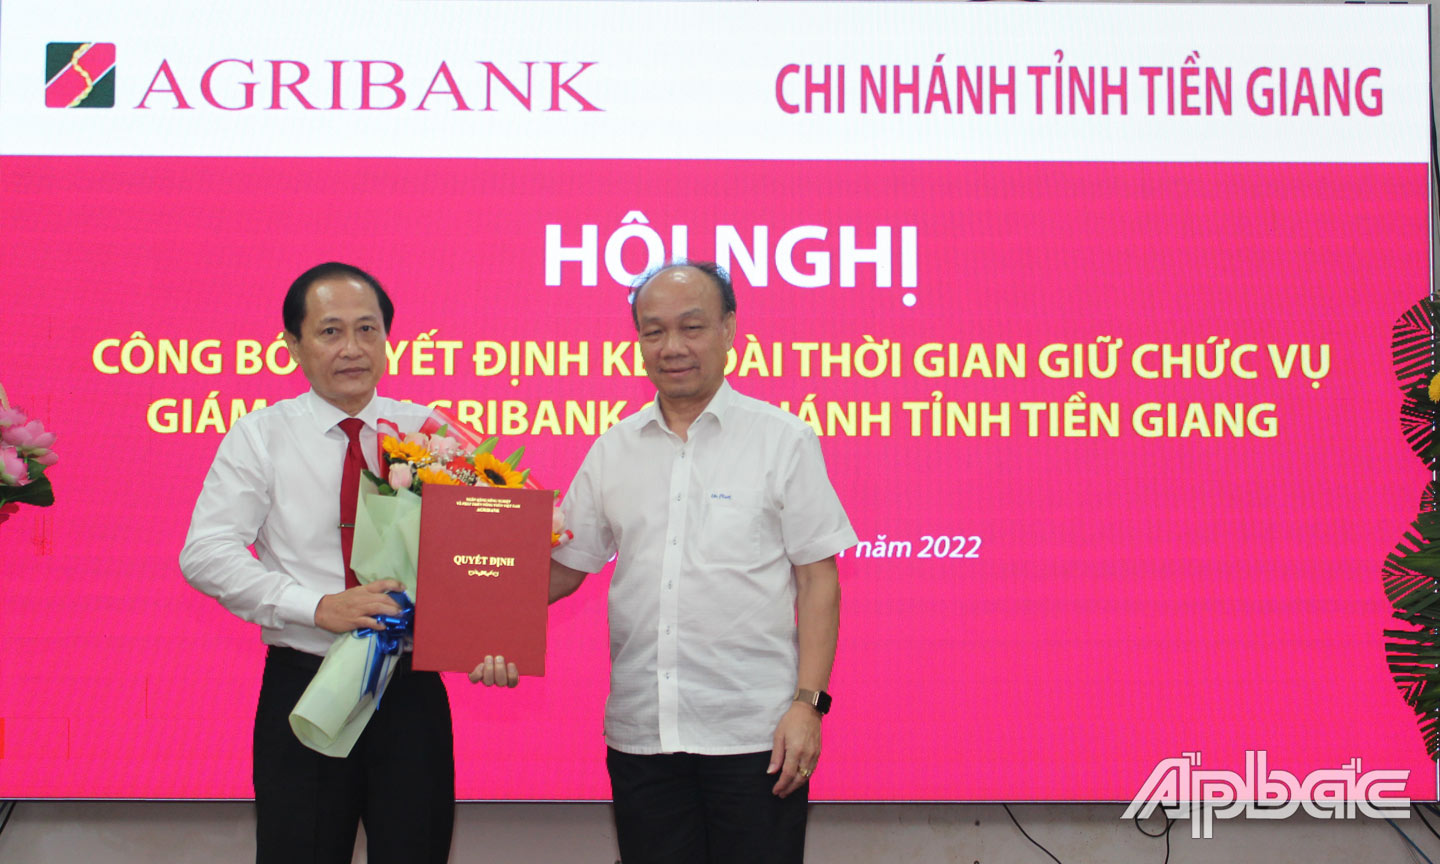 Ông Nguyễn Minh Trí, thành viên Hội đồng Agibank trao Quyết định kéo dài thời gian giữ chức vụ cho ông Nguyễn Văn Huỳnh.